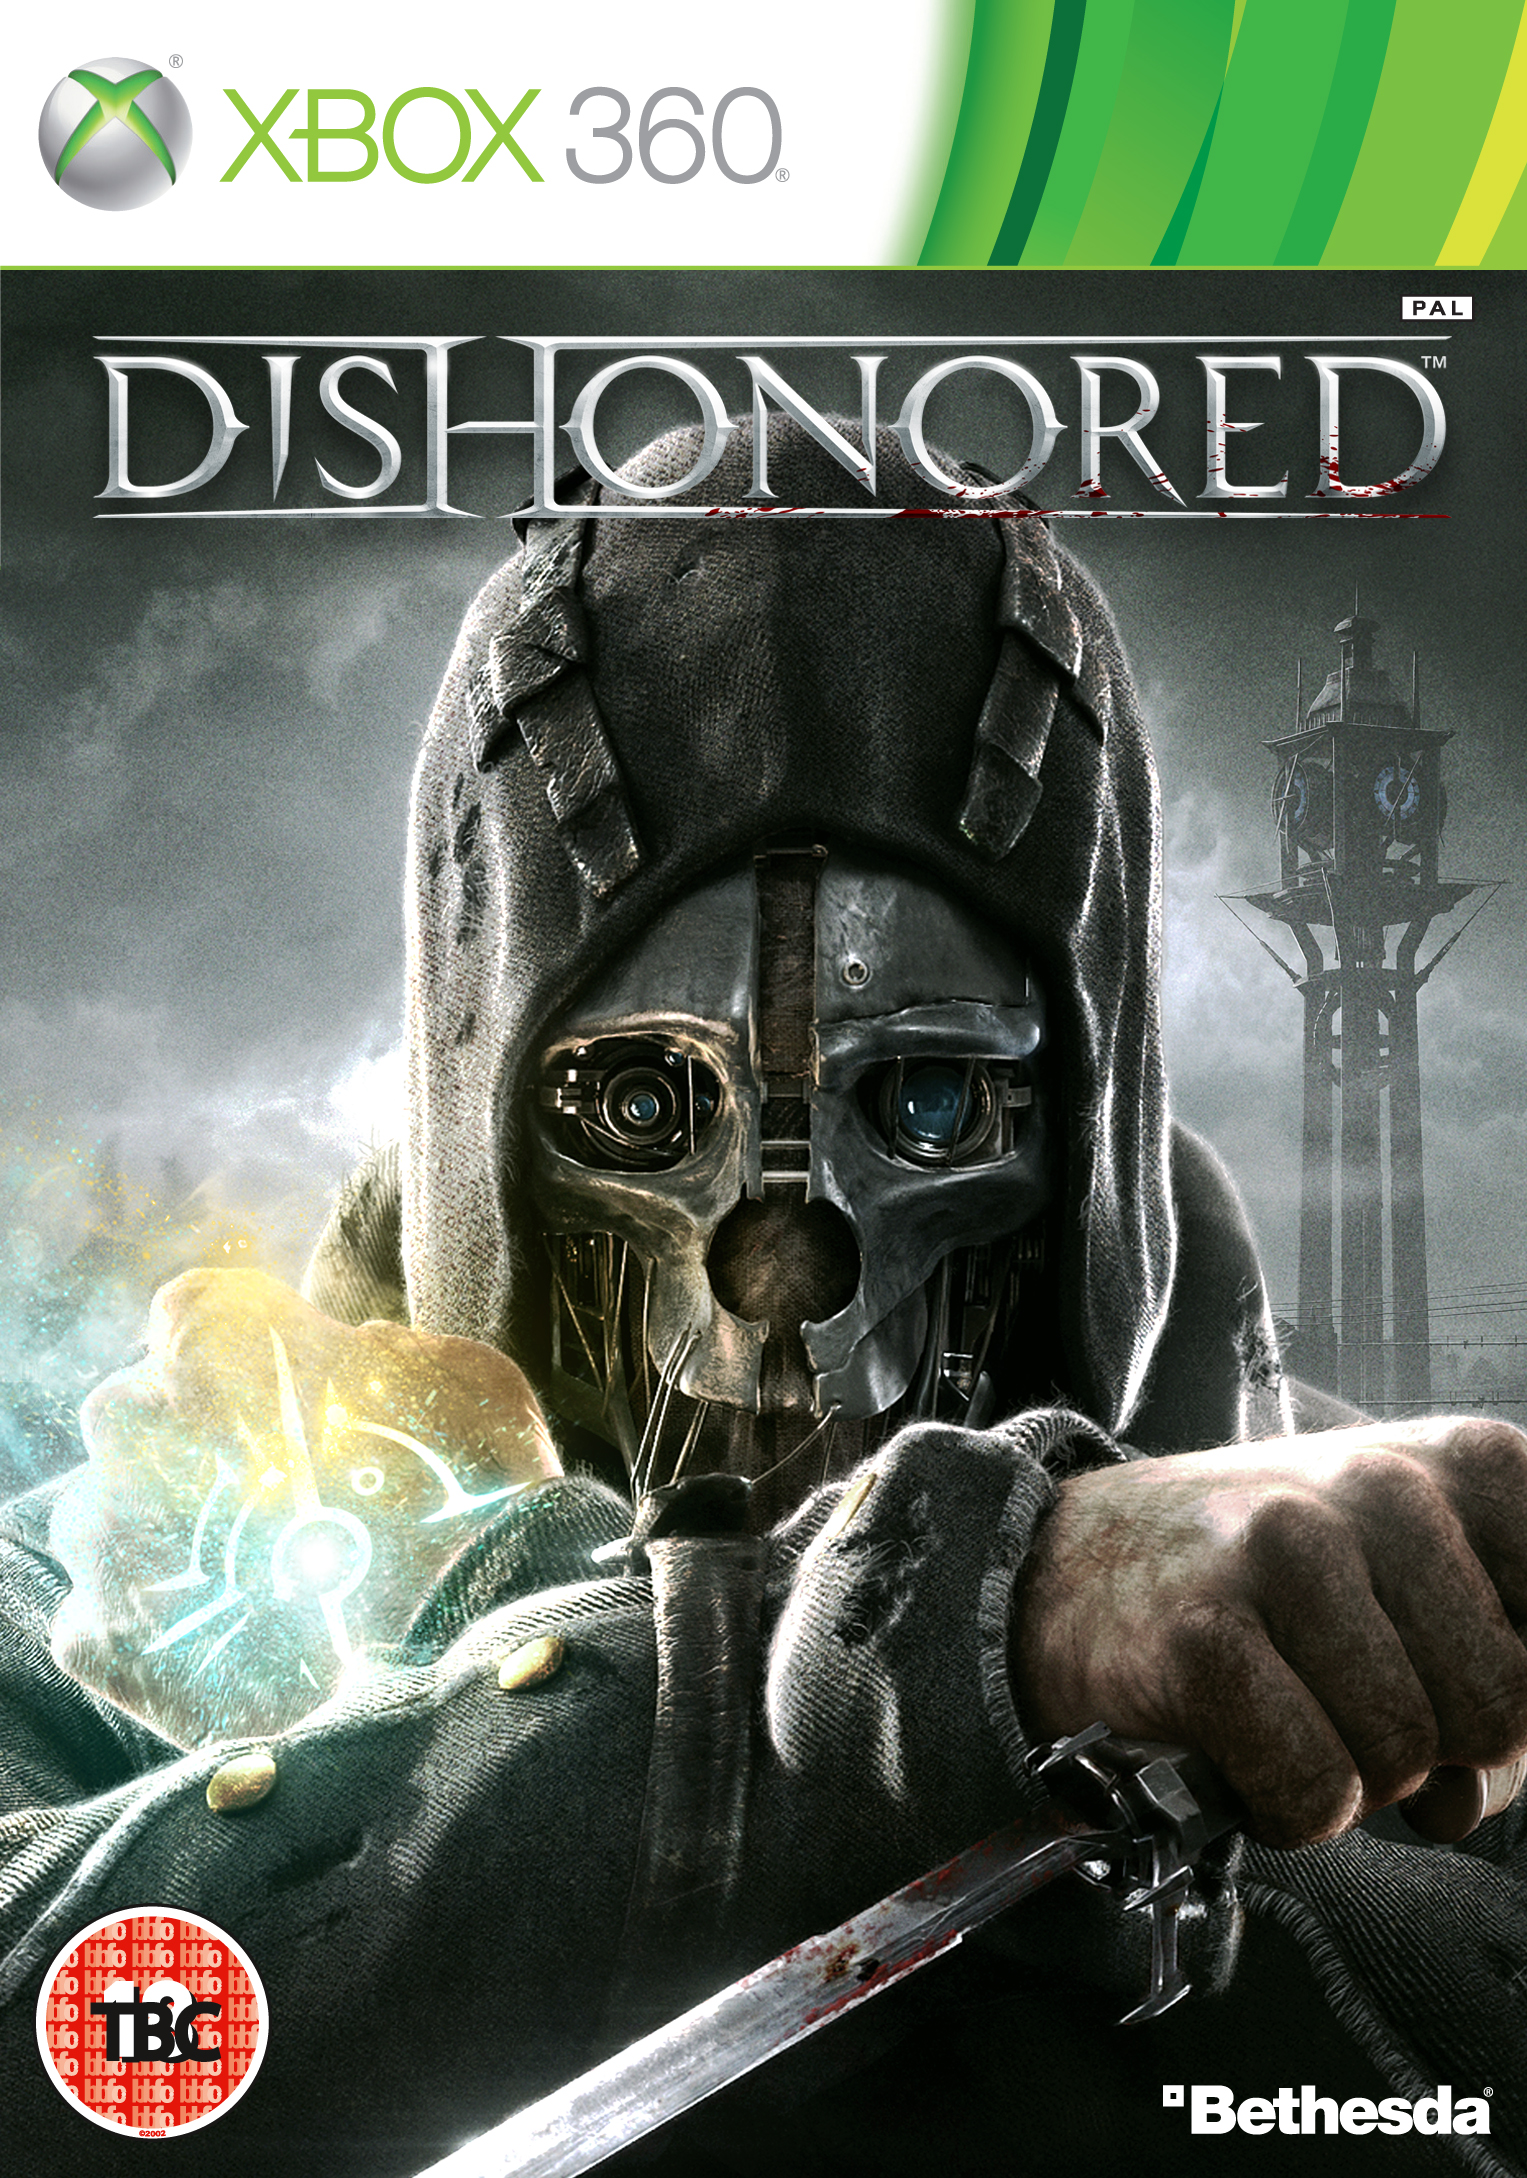 XBOX 360 - Dishonored